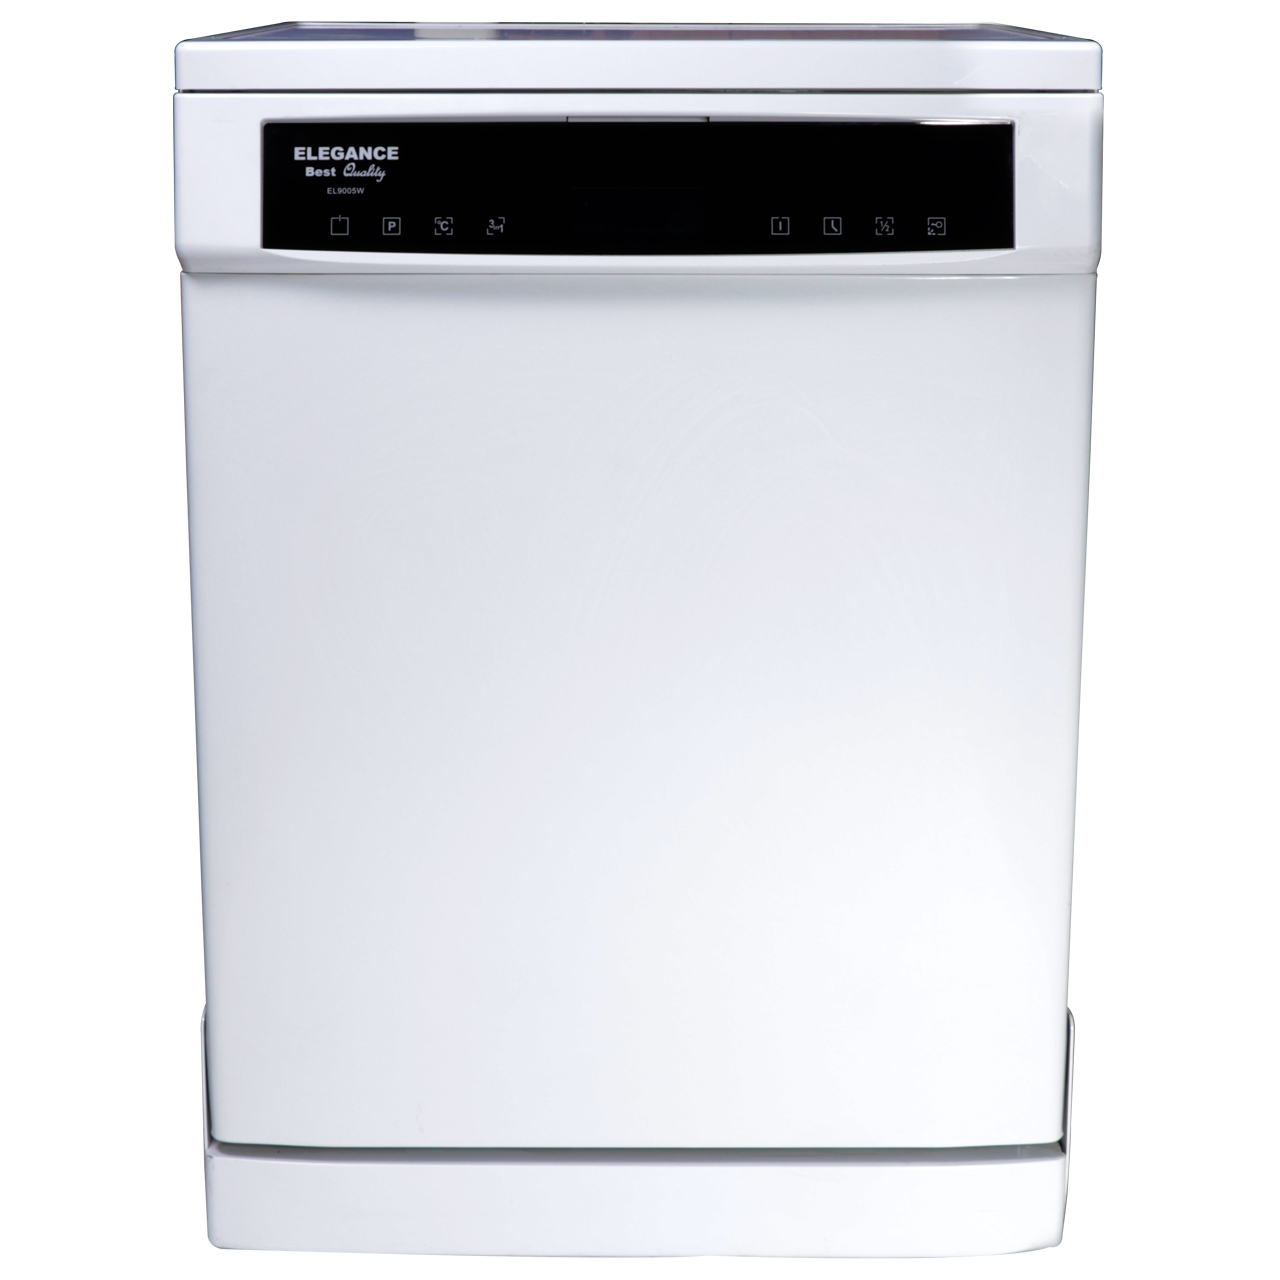 نکته خرید - قیمت روز ماشین ظرفشویی الگانس مدل EL9005 خرید